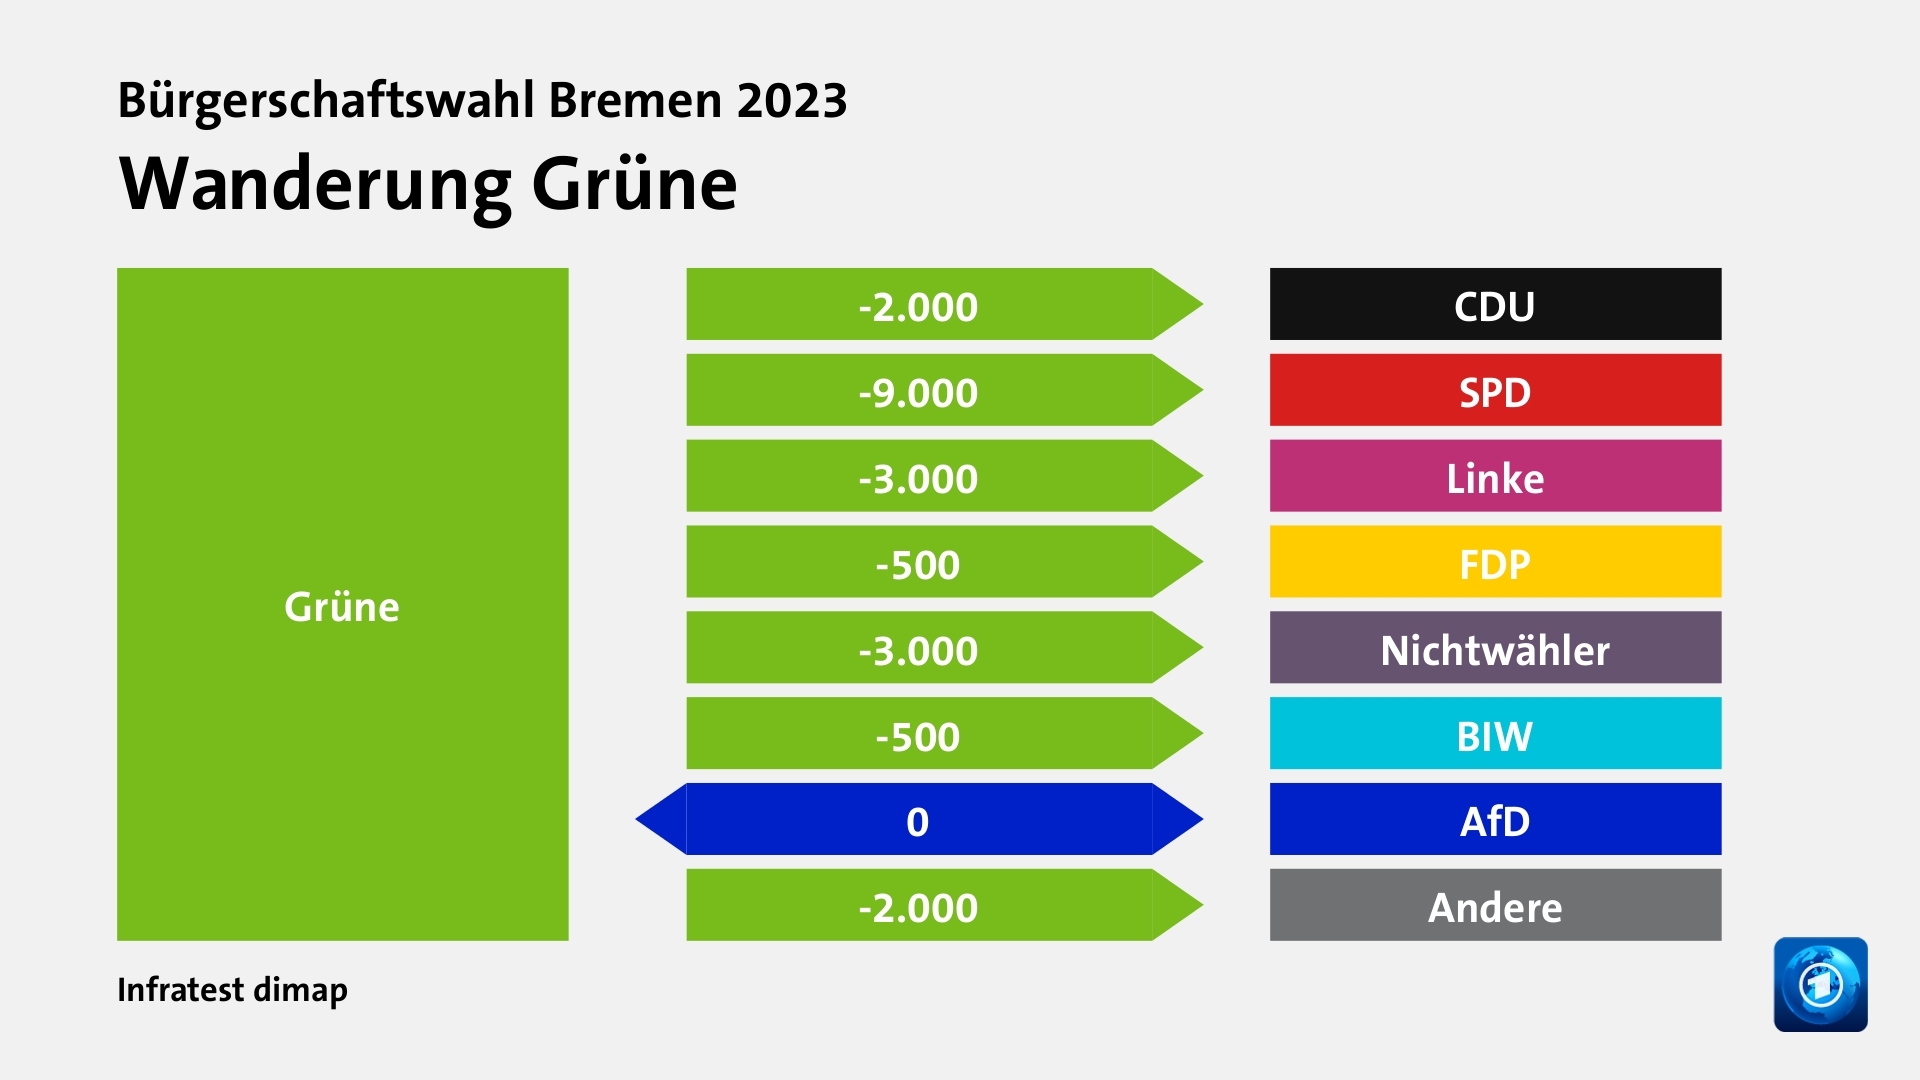 Wanderung Grünezu CDU 2.000 Wähler, zu SPD 9.000 Wähler, zu Linke 3.000 Wähler, zu FDP 500 Wähler, zu Nichtwähler 3.000 Wähler, zu BIW 500 Wähler, zu AfD 0 Wähler, zu Andere 2.000 Wähler, Quelle: Infratest dimap